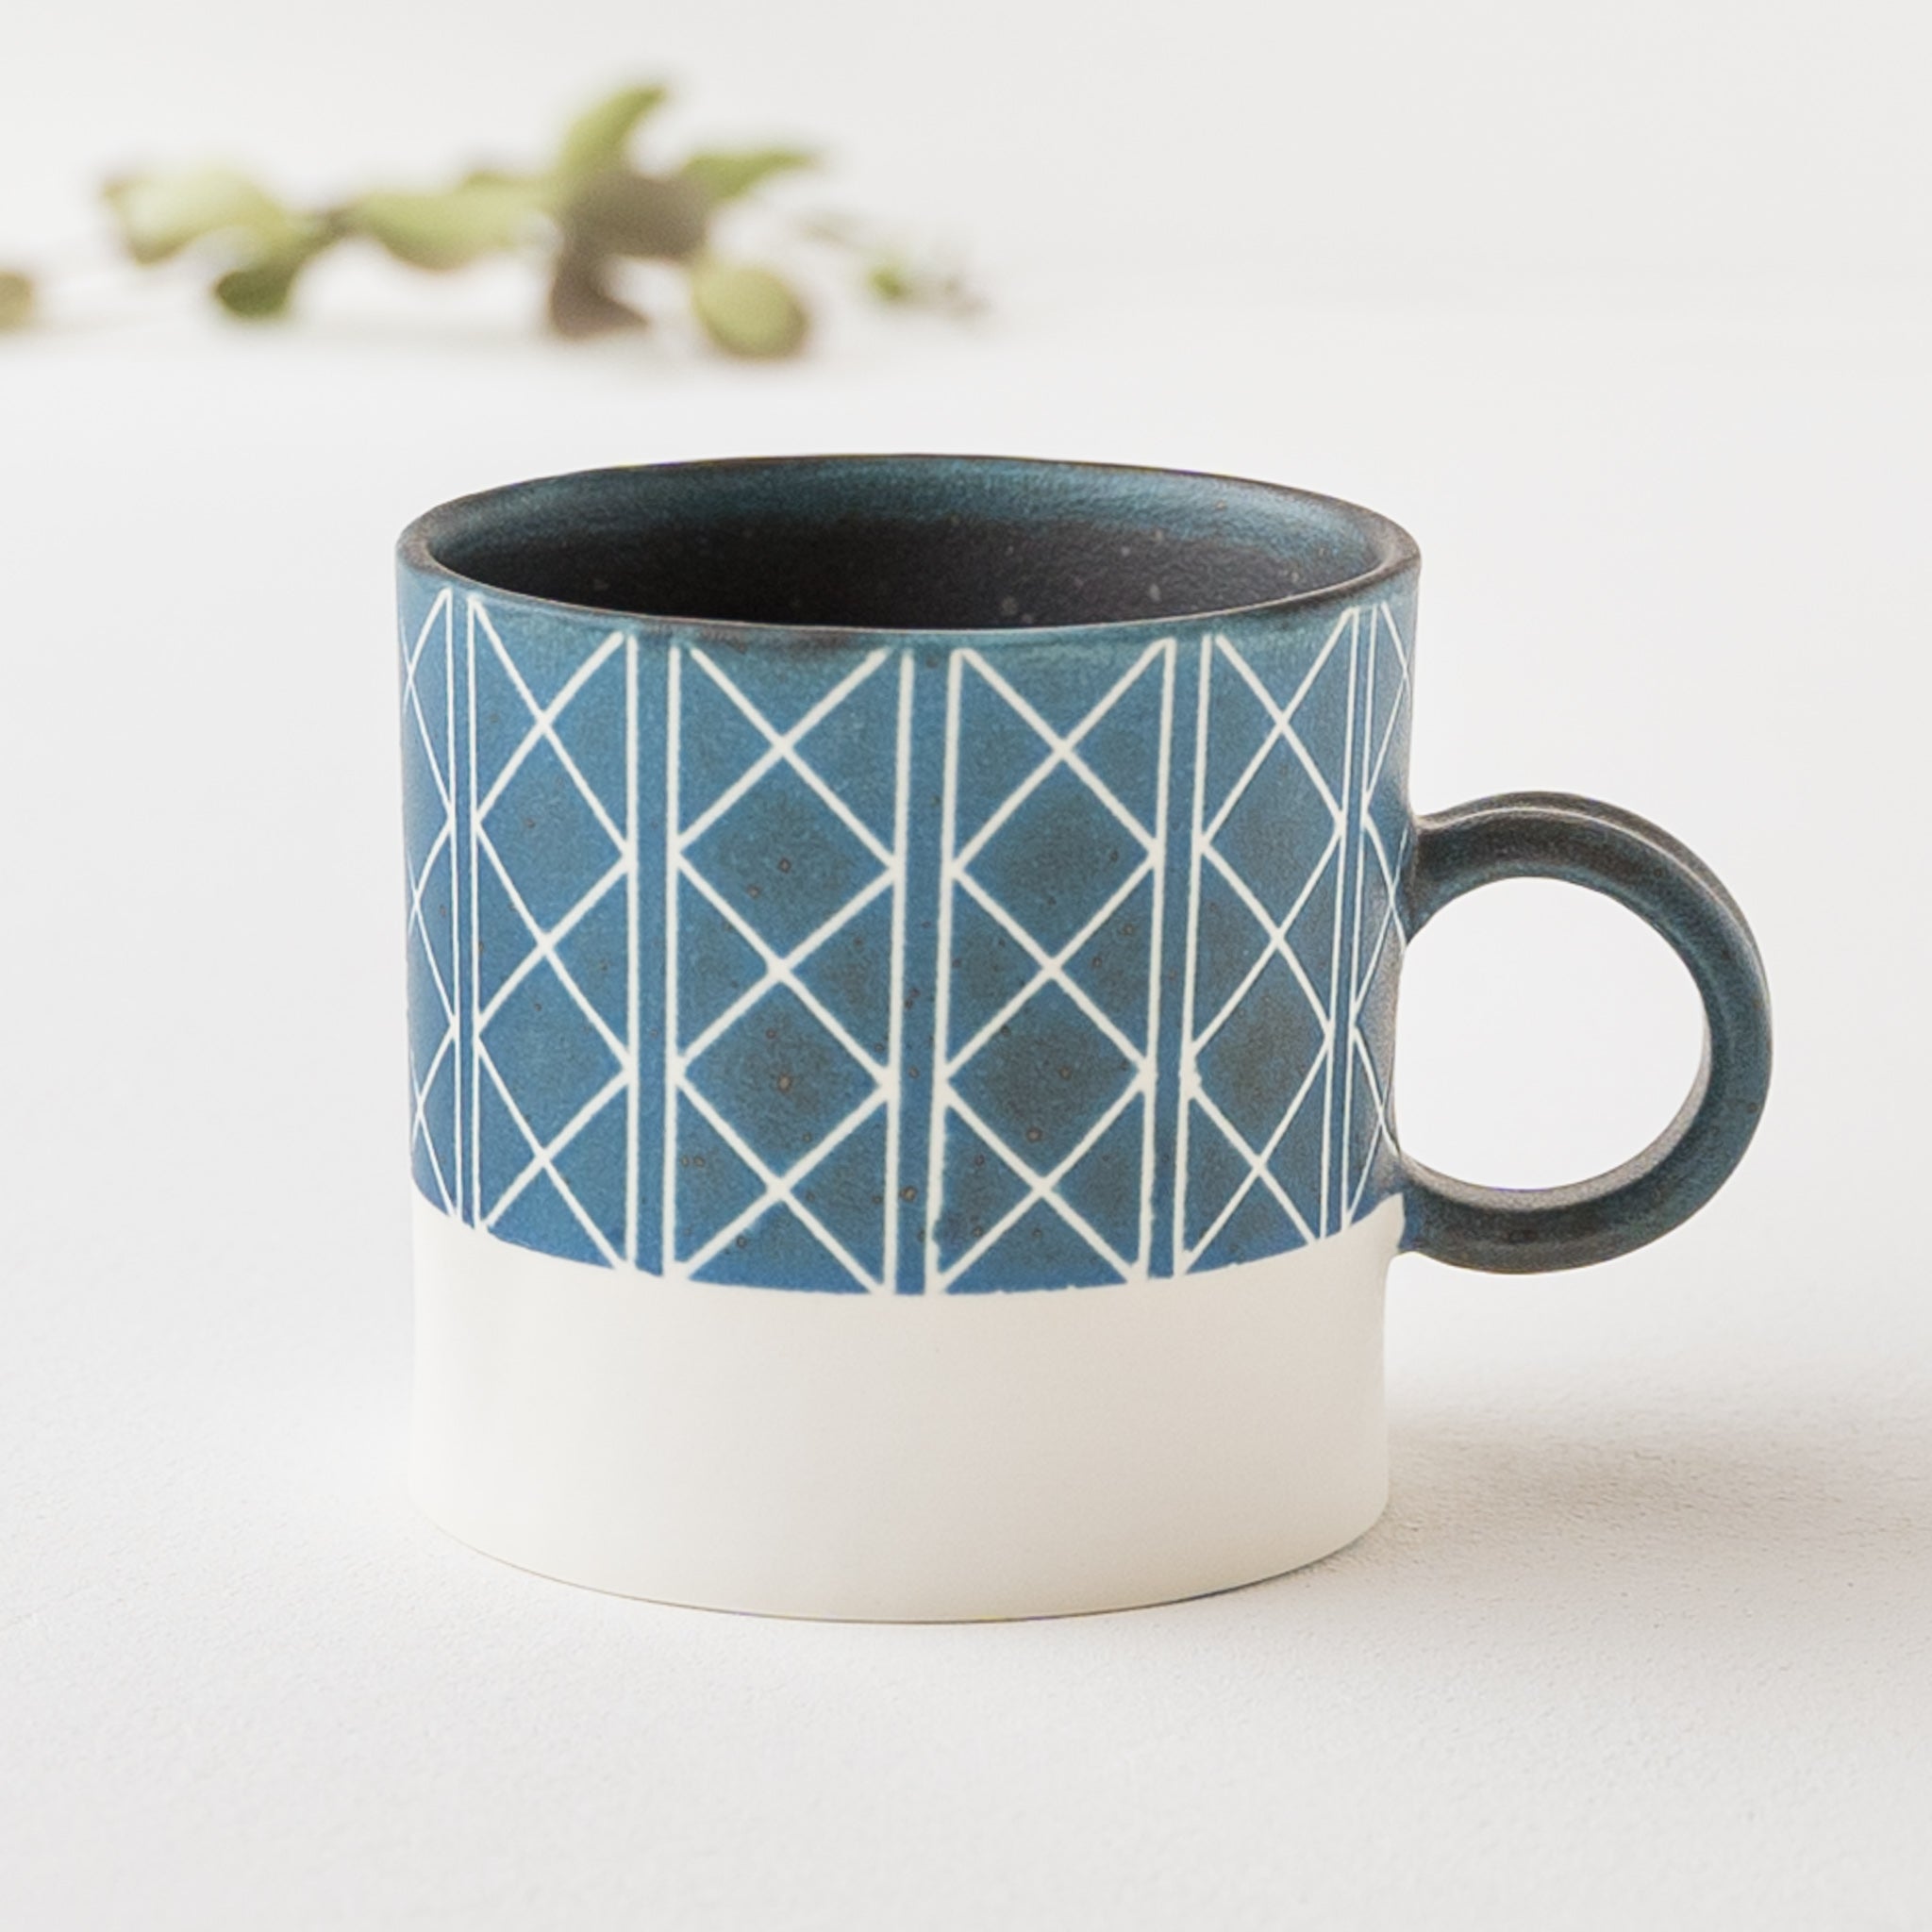 Yukari Nakagawa's mug with a stylish geometric pattern